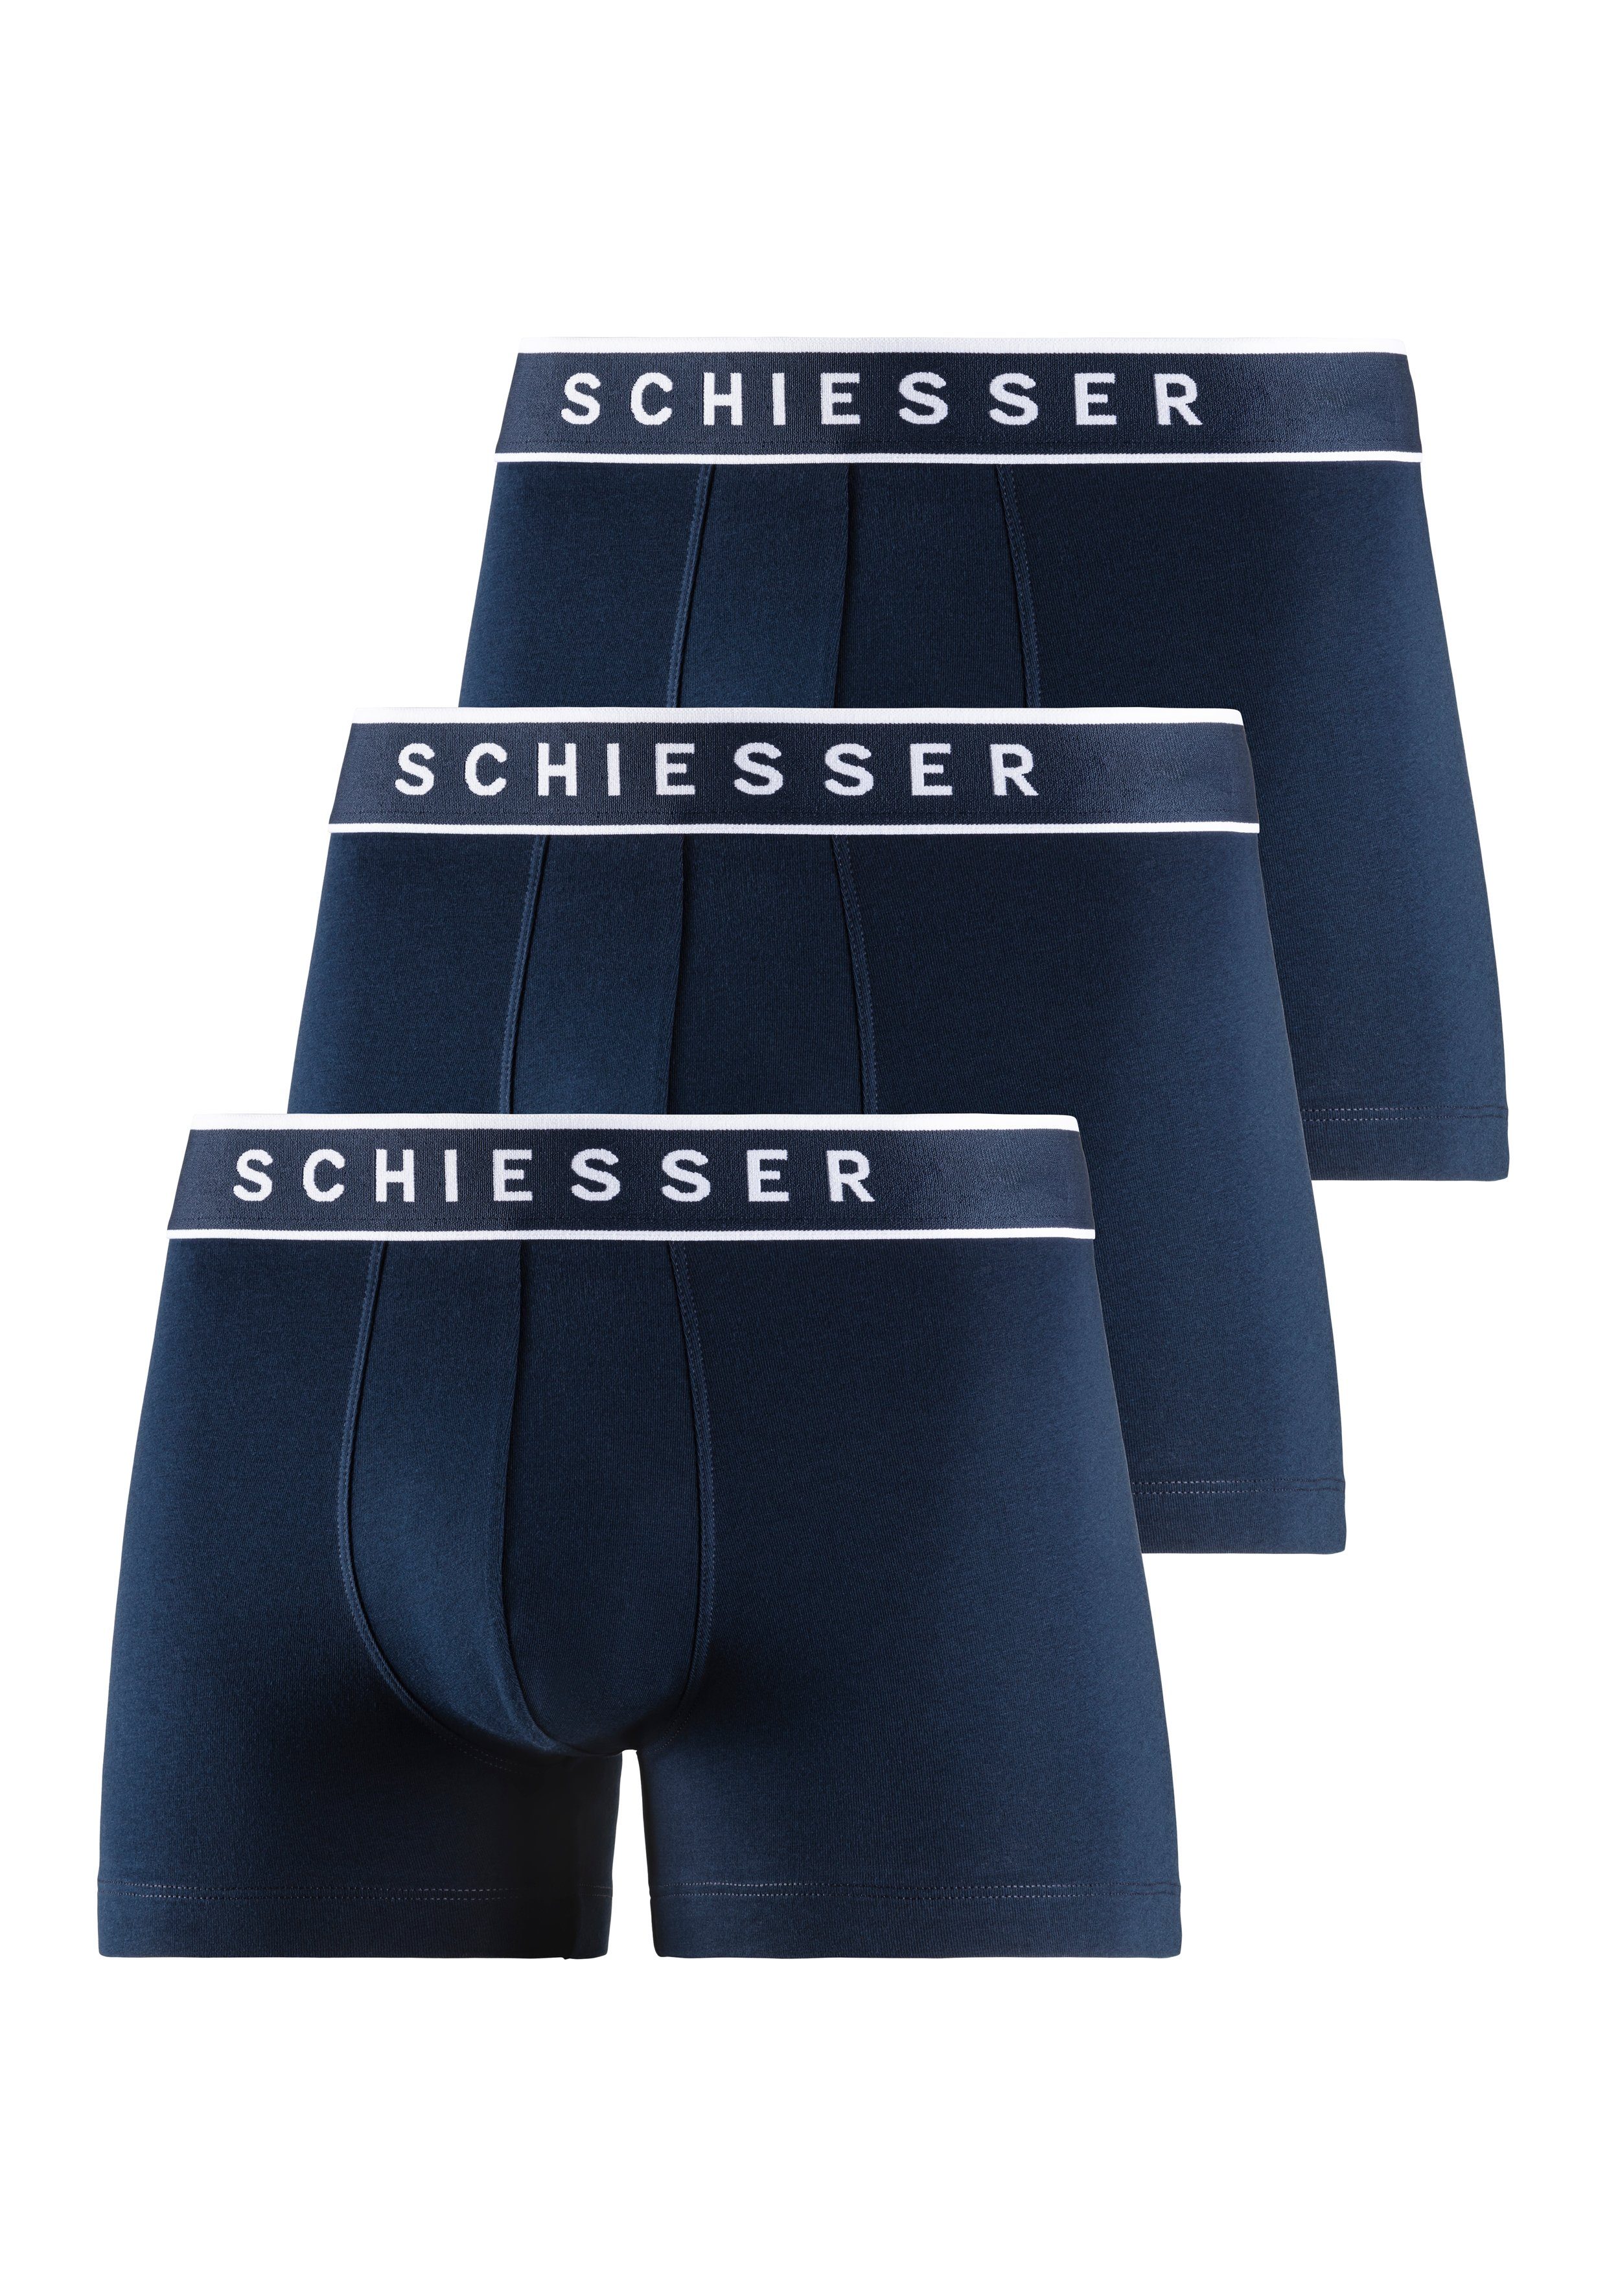 Schiesser Boxer (3er-Pack) navy mit navy, navy, Logobund